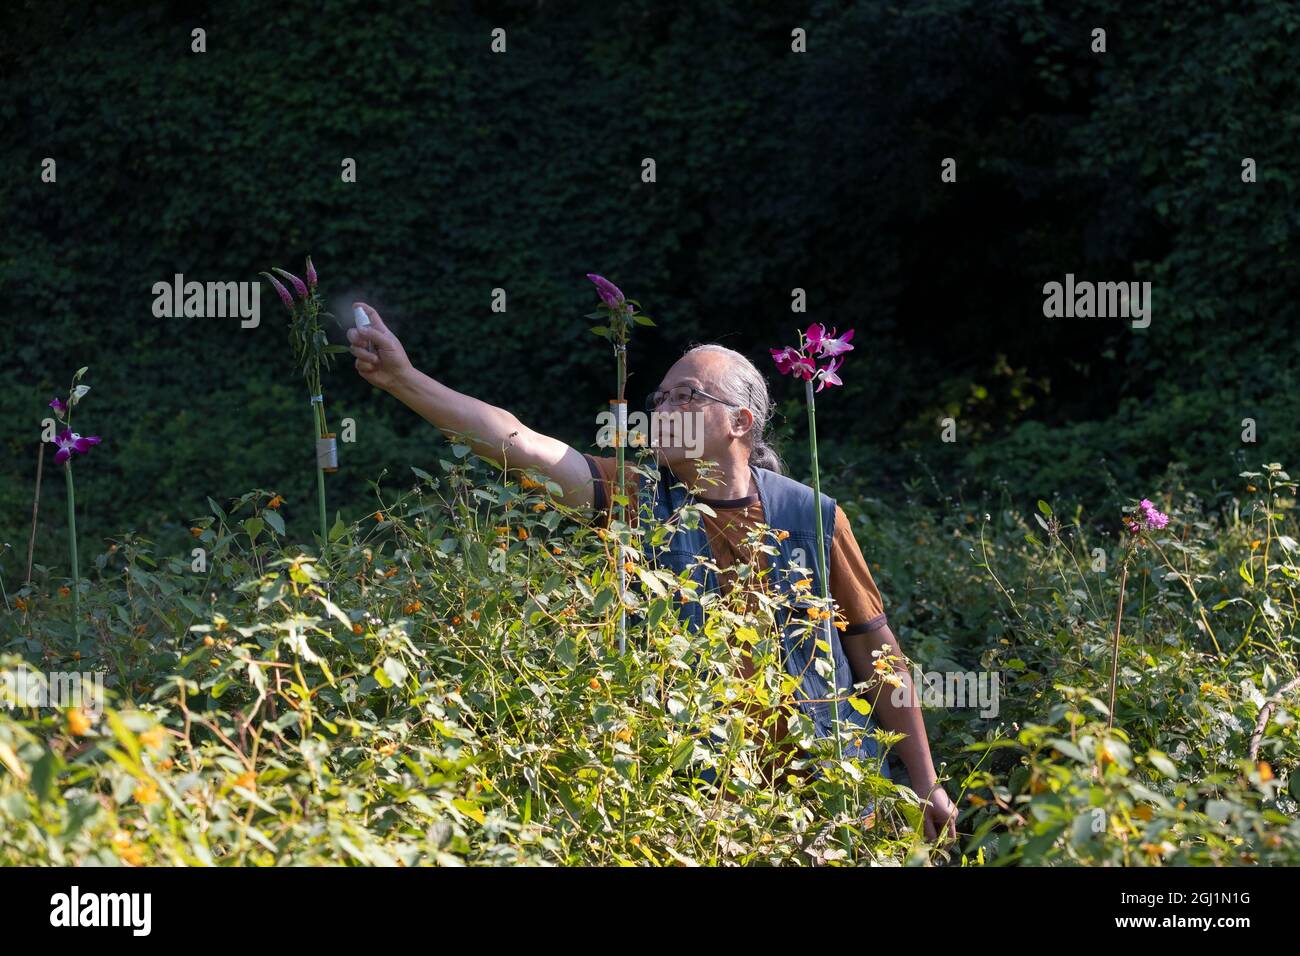 Un photographe d'oiseaux pulvérise de l'eau de sucre sur des fleurs qu'il a amenées pour attirer des colibris. Dans un parc à Queens, New York. Banque D'Images